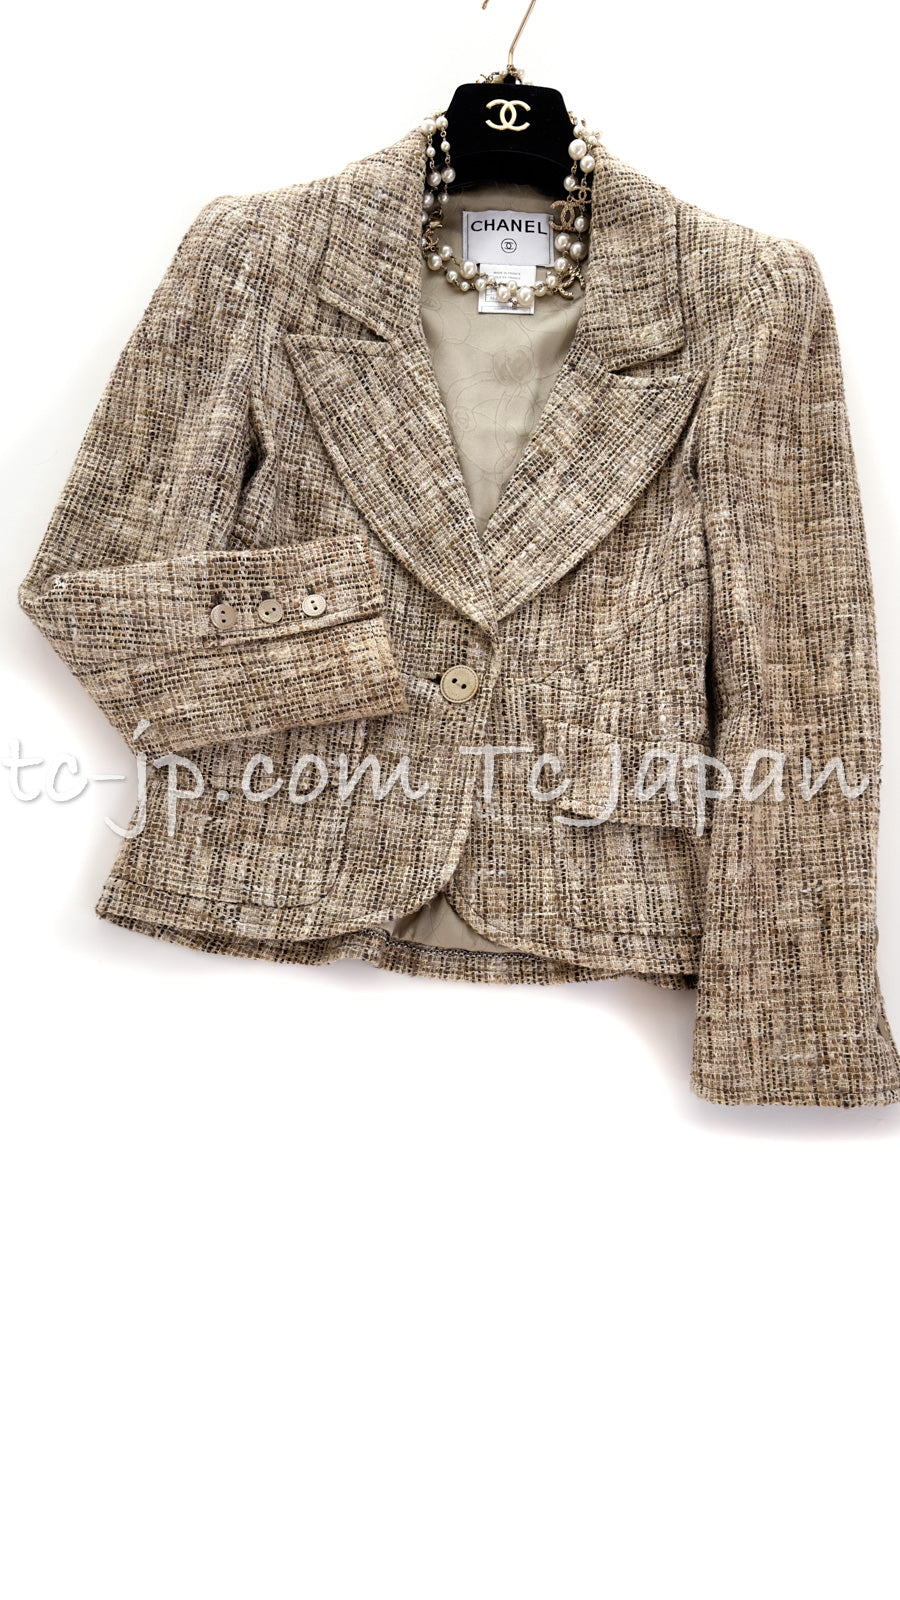 CHANEL 03S Beige Floral Cotton Tweed Jacket 36 38 シャネル  ベージュ・フローラル・コットン・ツイード・ジャケット 即発